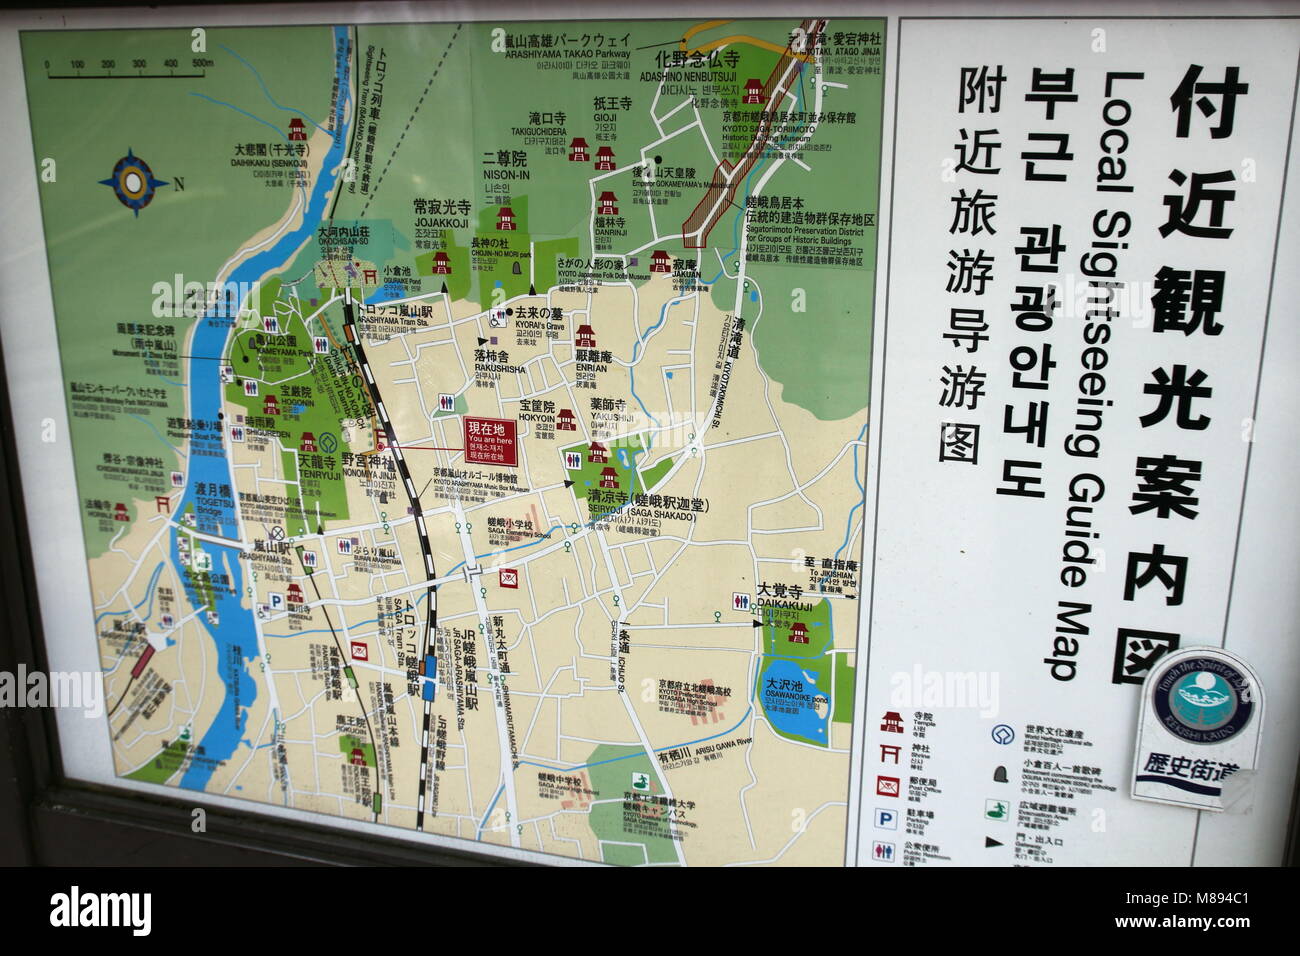 Touristische Karte Namensschild in Arashiyama, Kyoto. Arashiyama ist ein National Historic Site und Ort der landschaftlichen Schönheit bezeichnet. Stockfoto